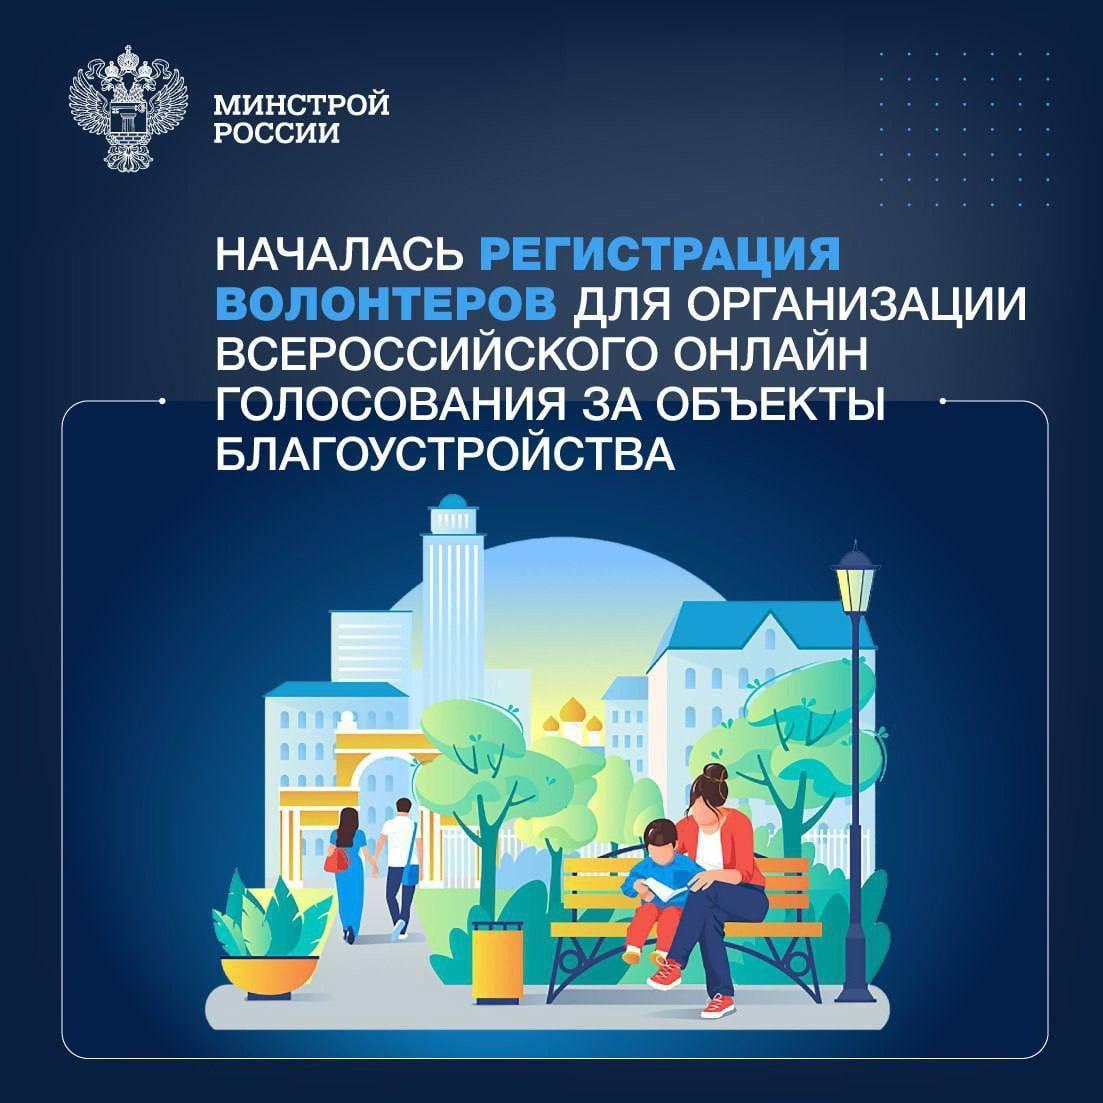  Открыта регистрация волонтёров для организации Всероссийского онлайн-голосования за благоустройство общественных пространств.